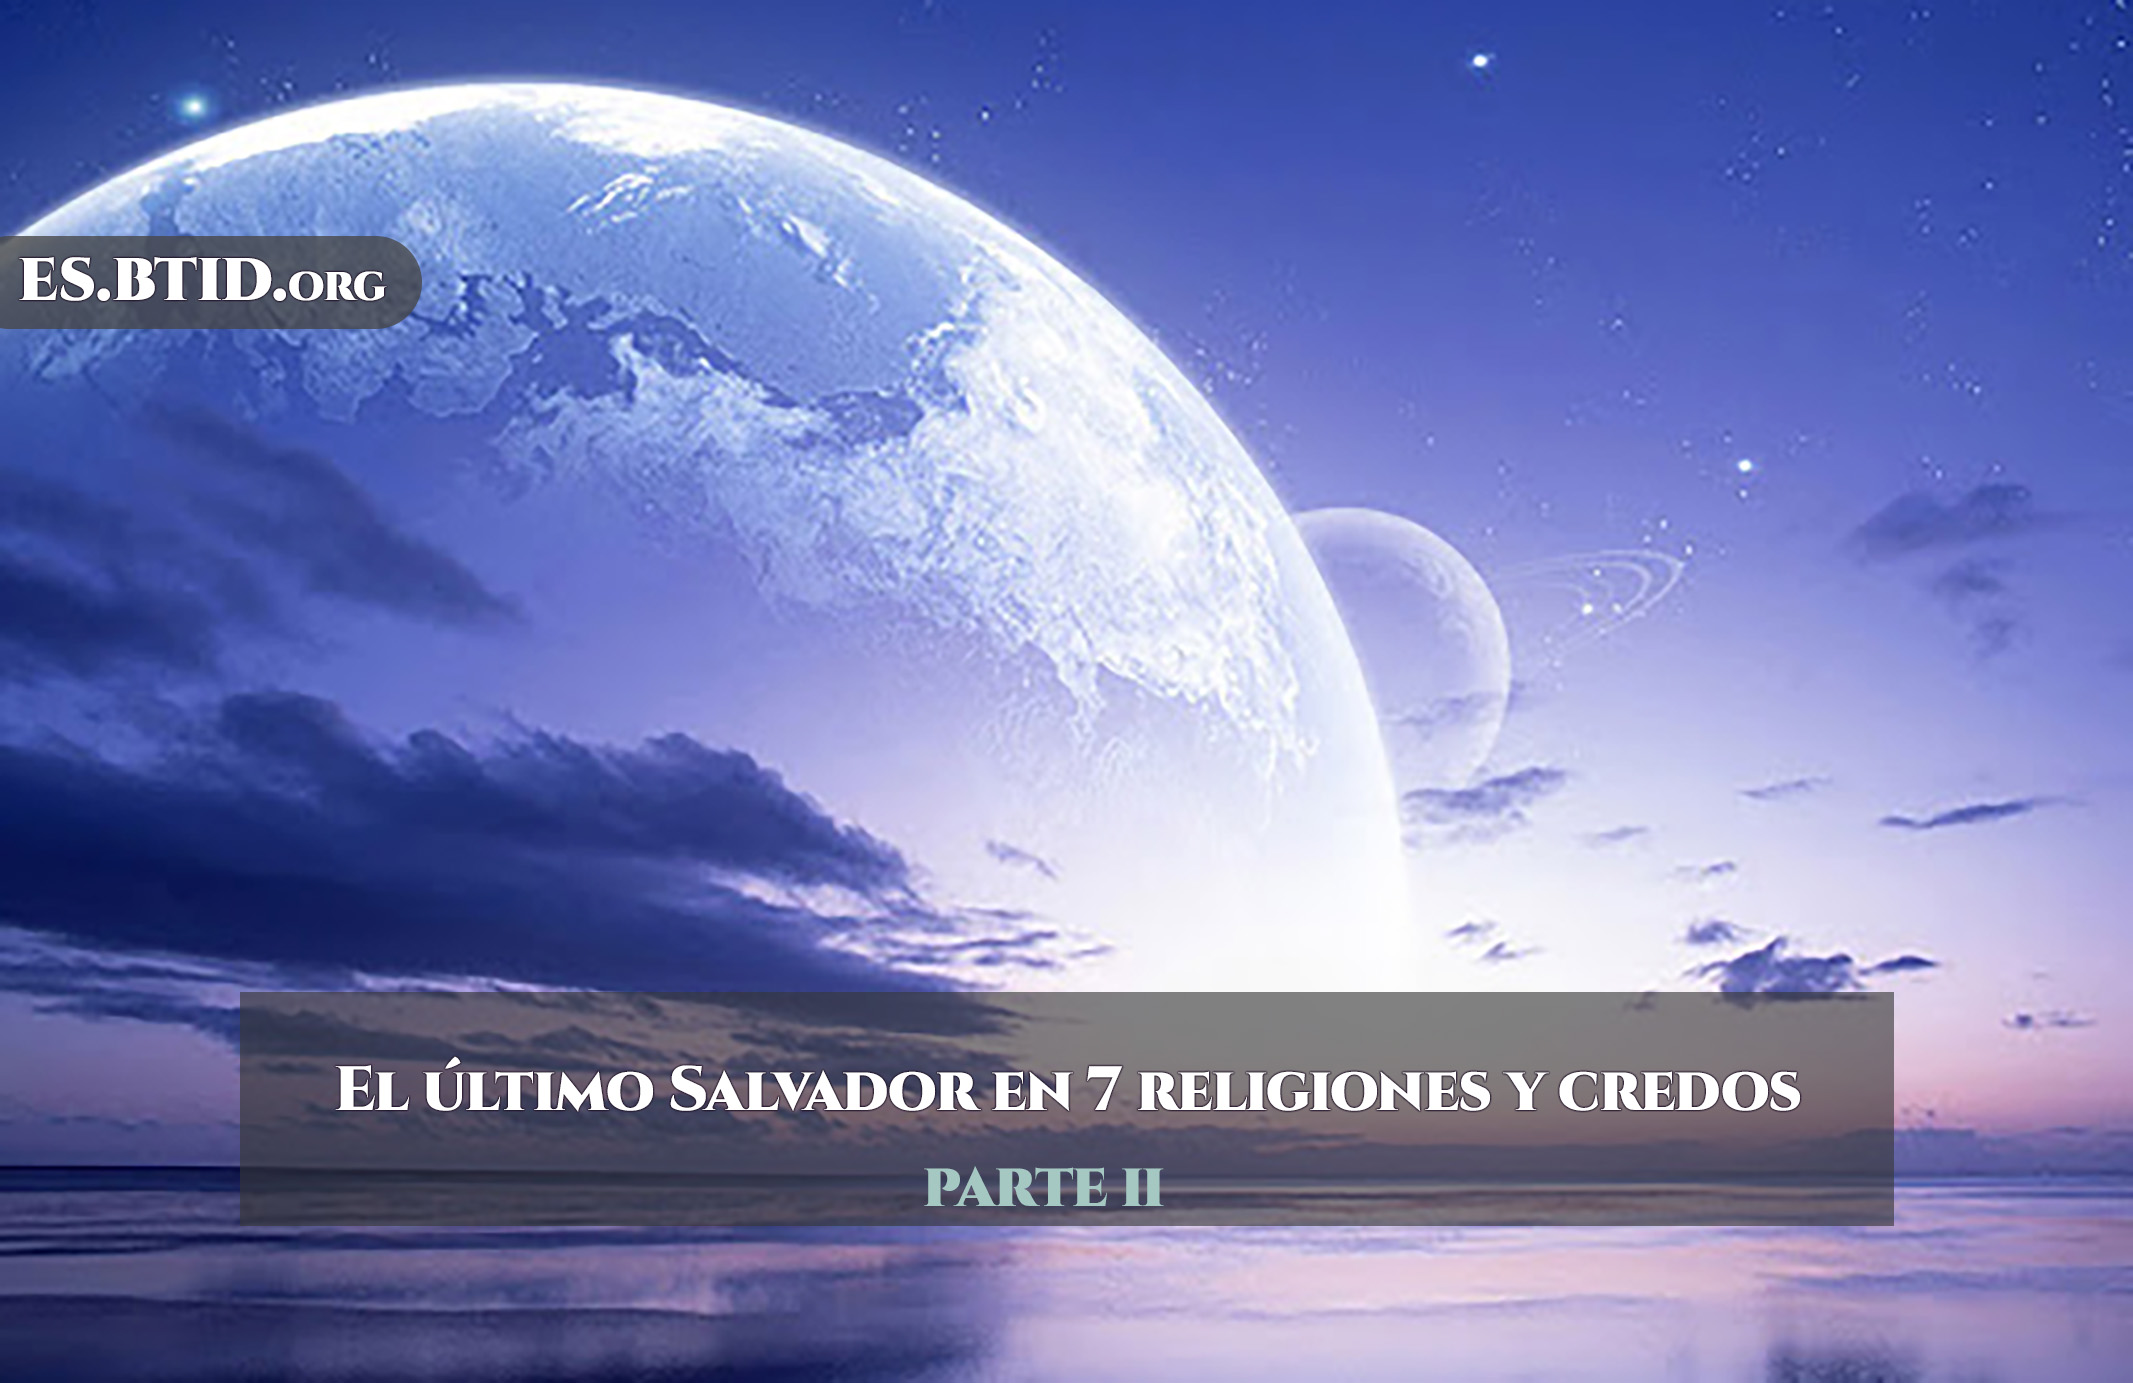 El último Salvador en 7 religiones - parte II